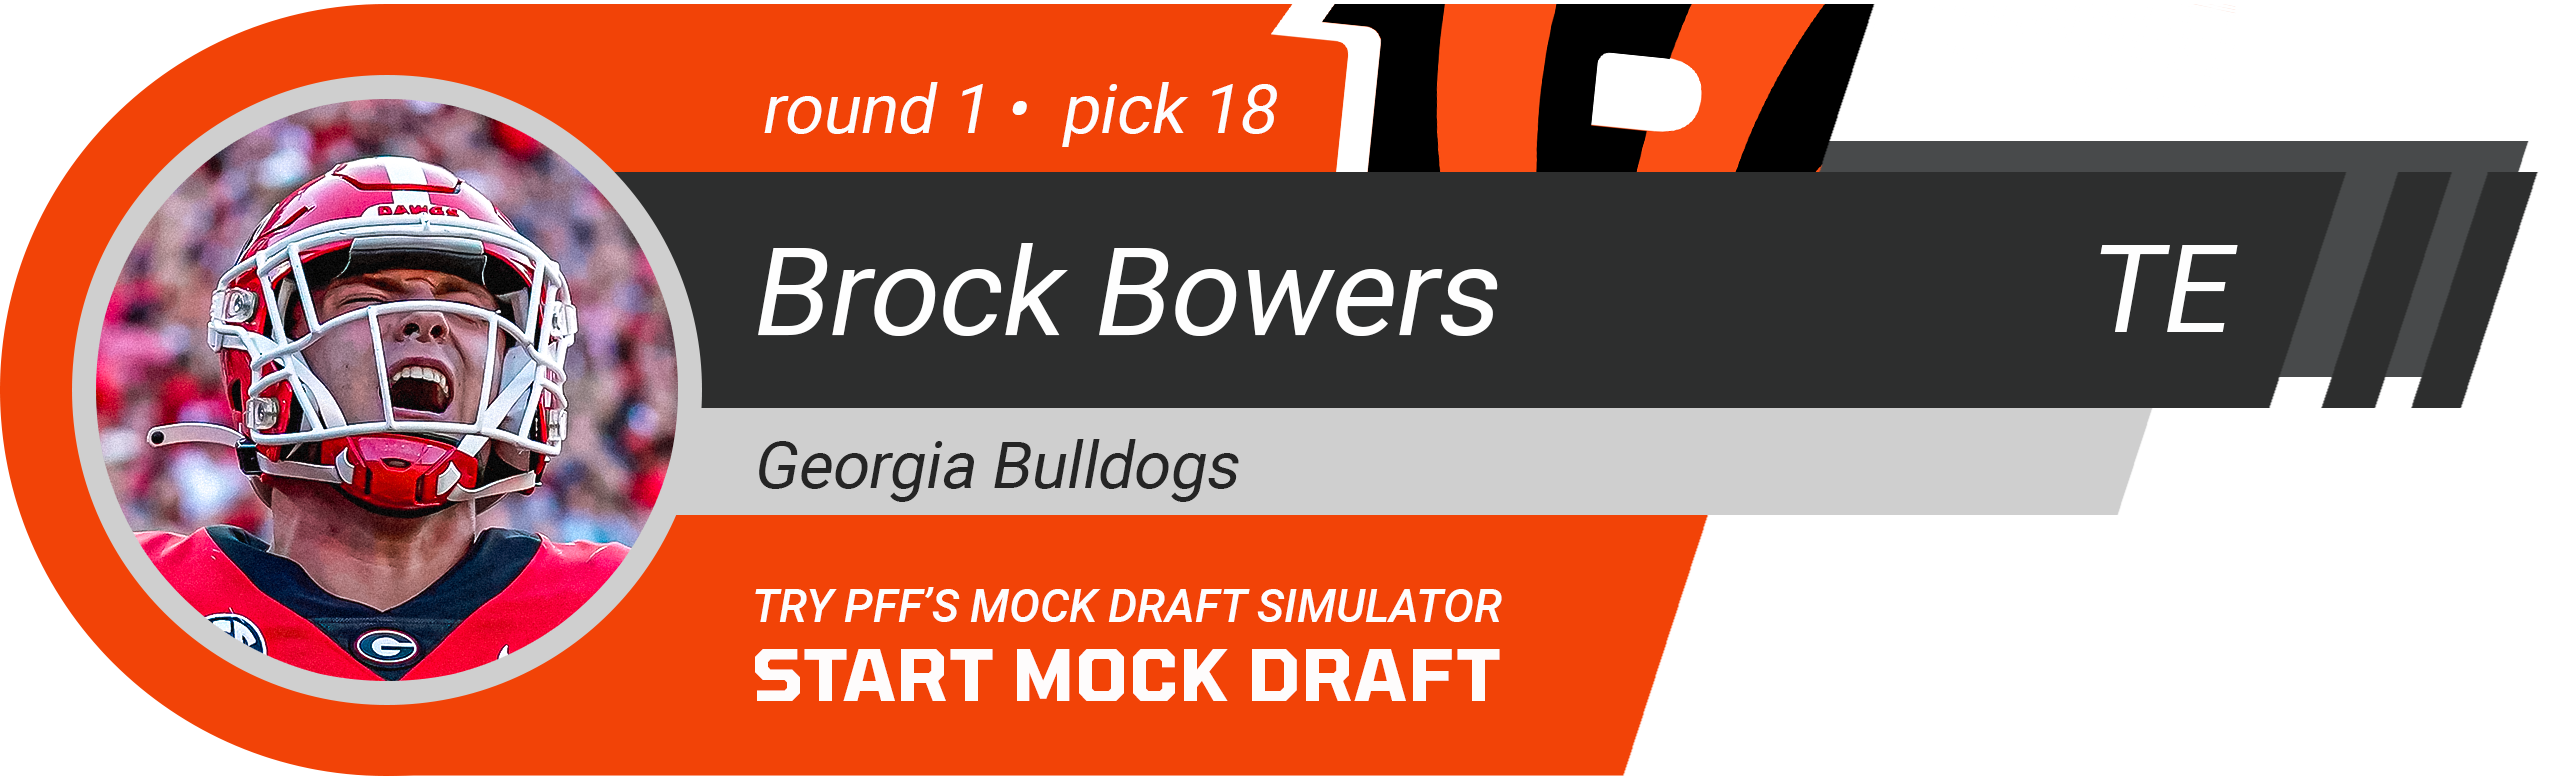 18. Cincinnati Bengals: TE Brock Bowers, Georgia